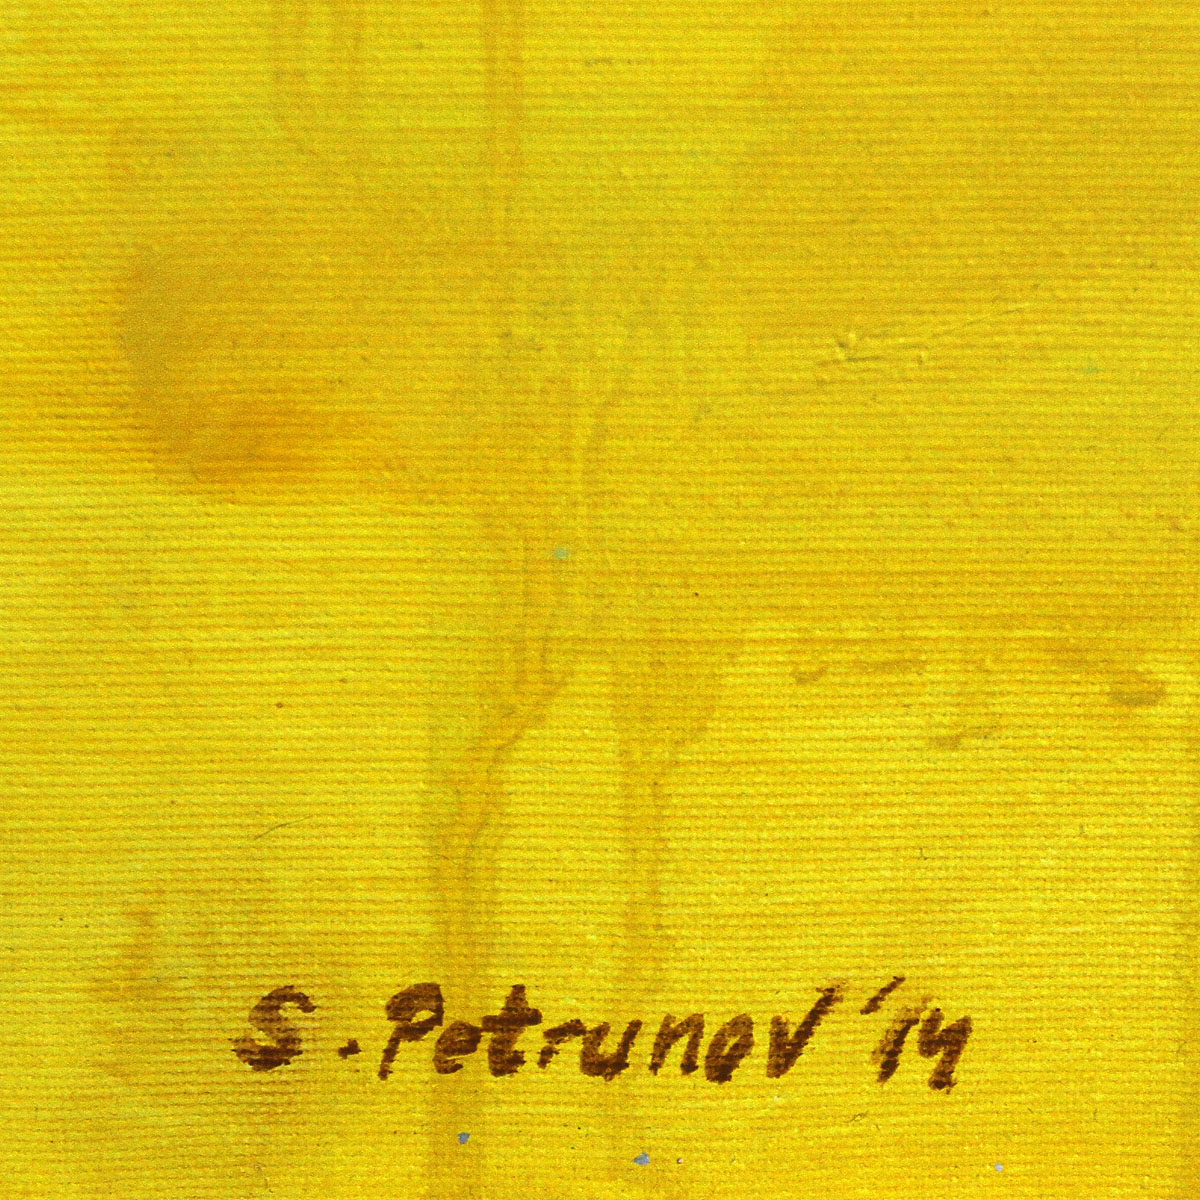 S. Petrunov: "Untitled", zeitgenössisches Originalgemälde (Unikat) (A)